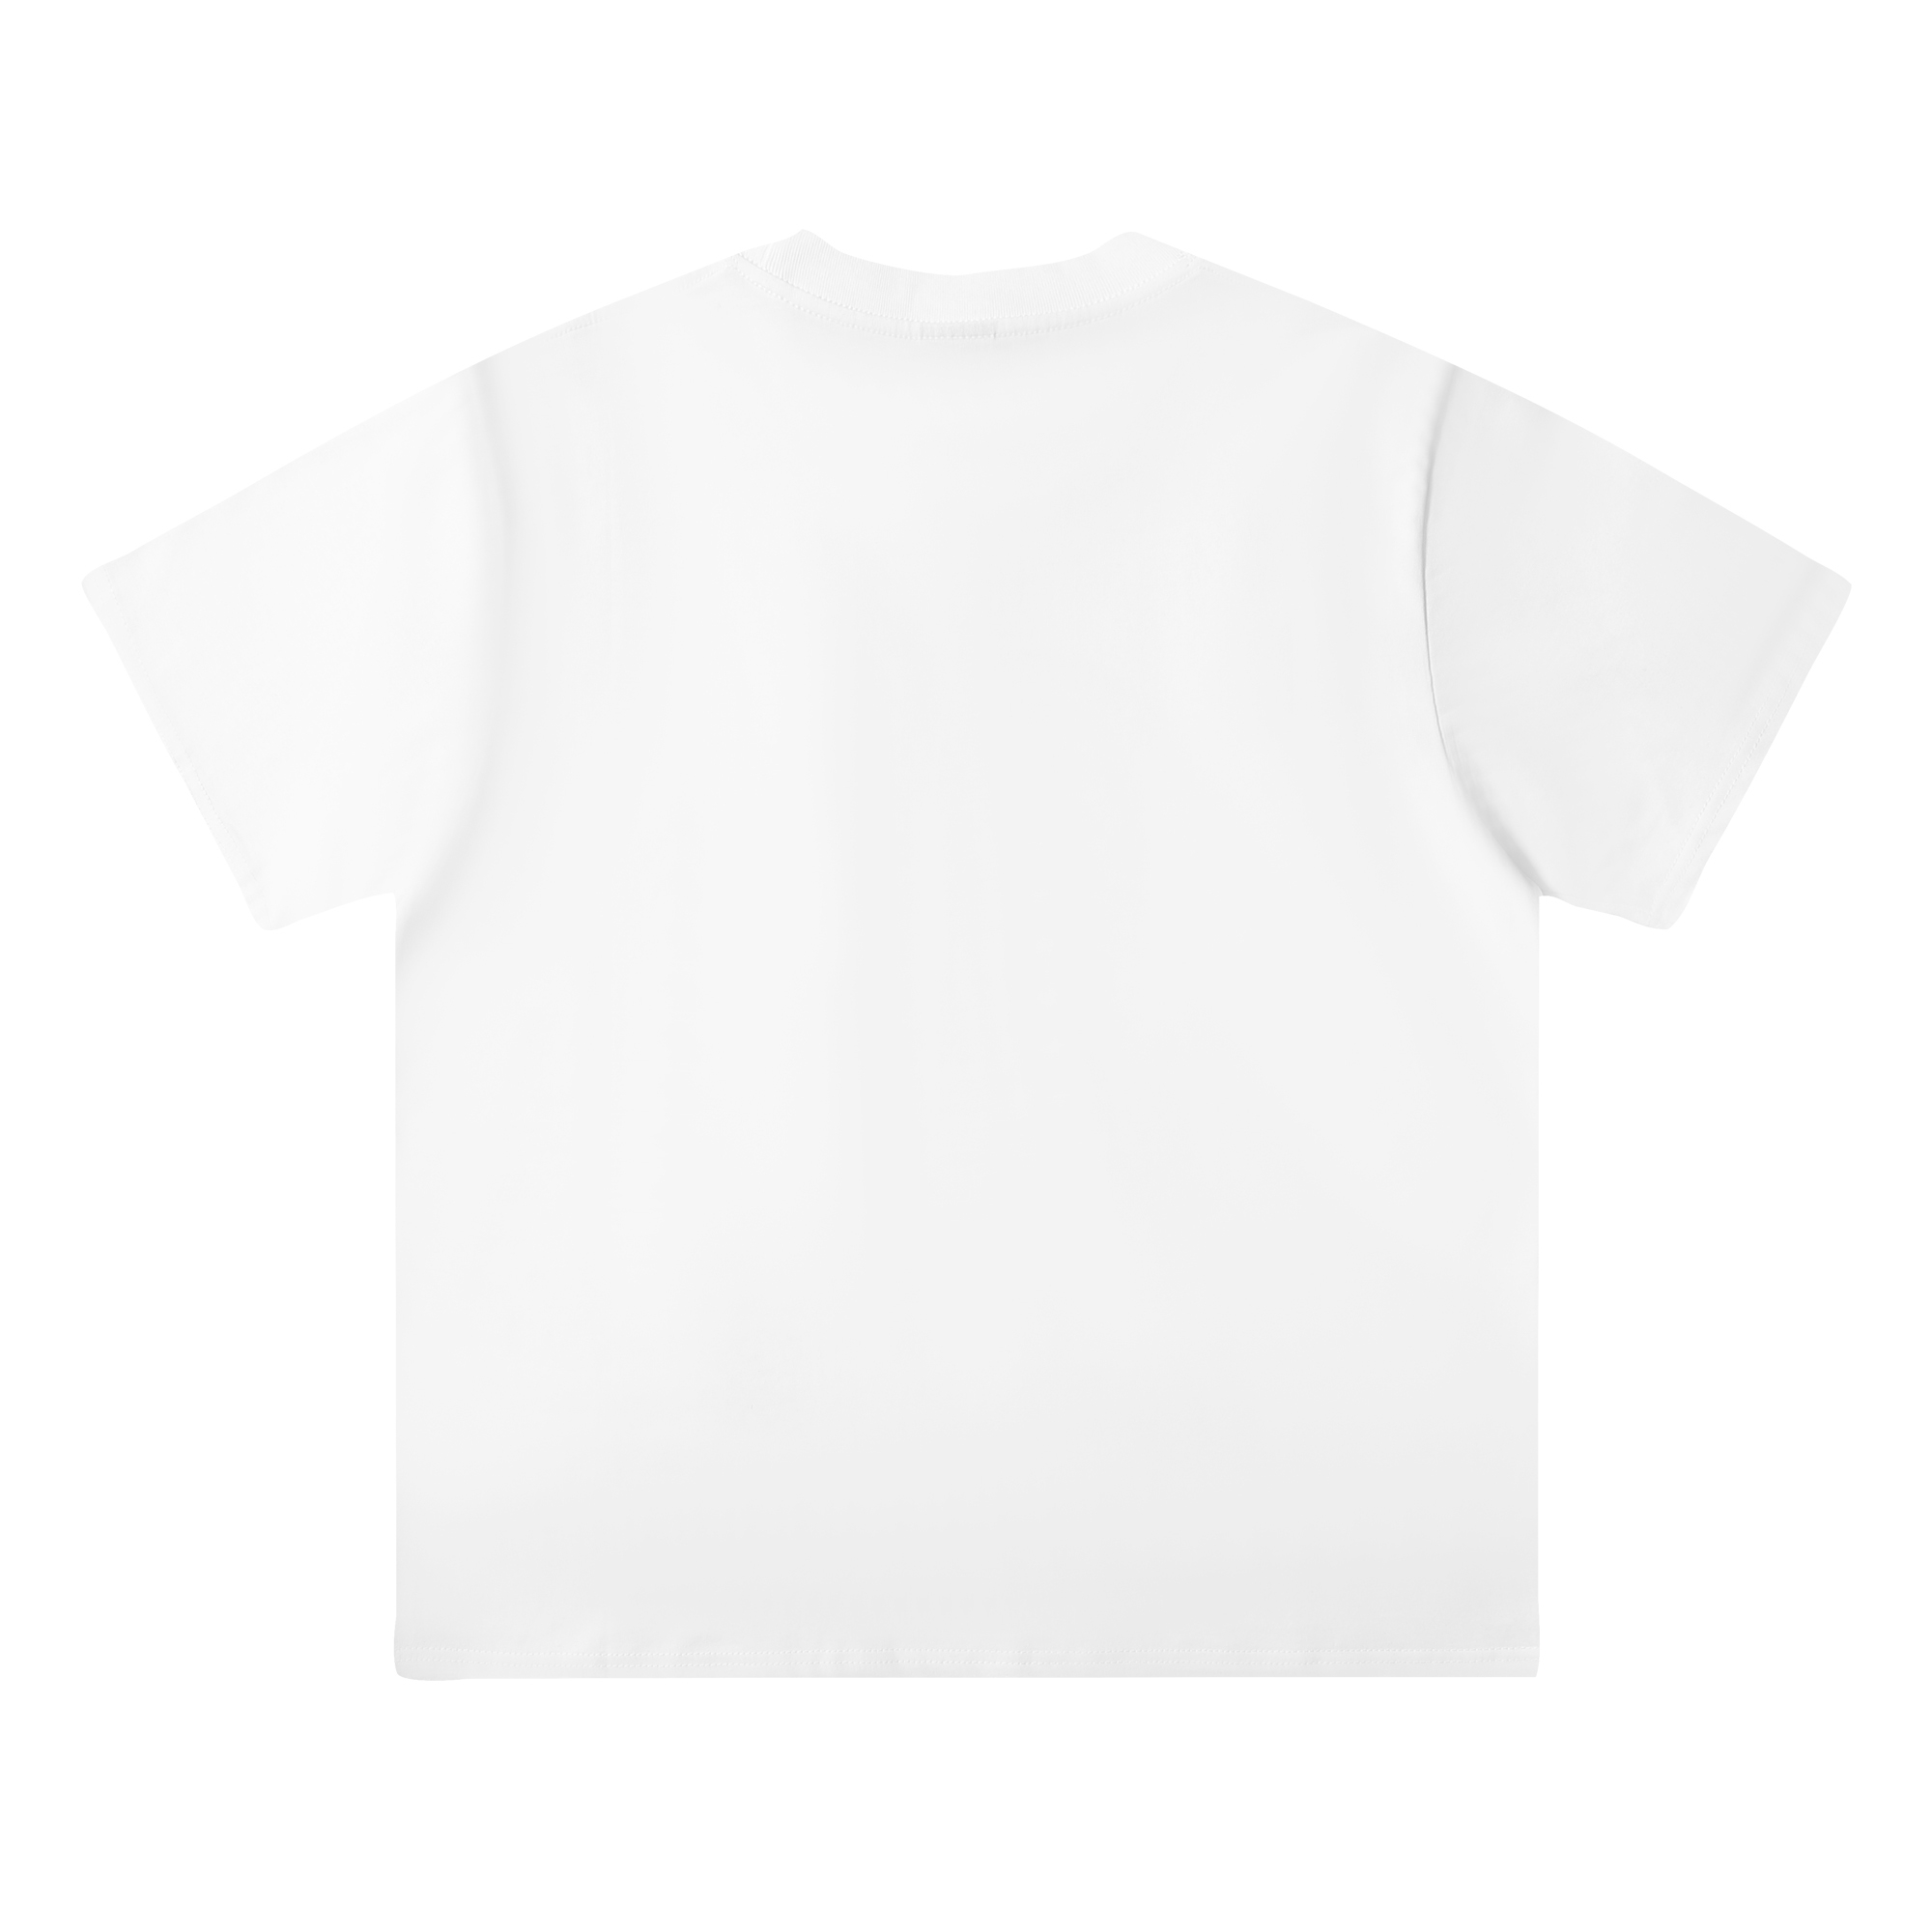 ステューシーtシャツ値段偽物 トップス 純綿 短袖 ロゴプリント 激安品 ファッション 大人気 2色可選_3